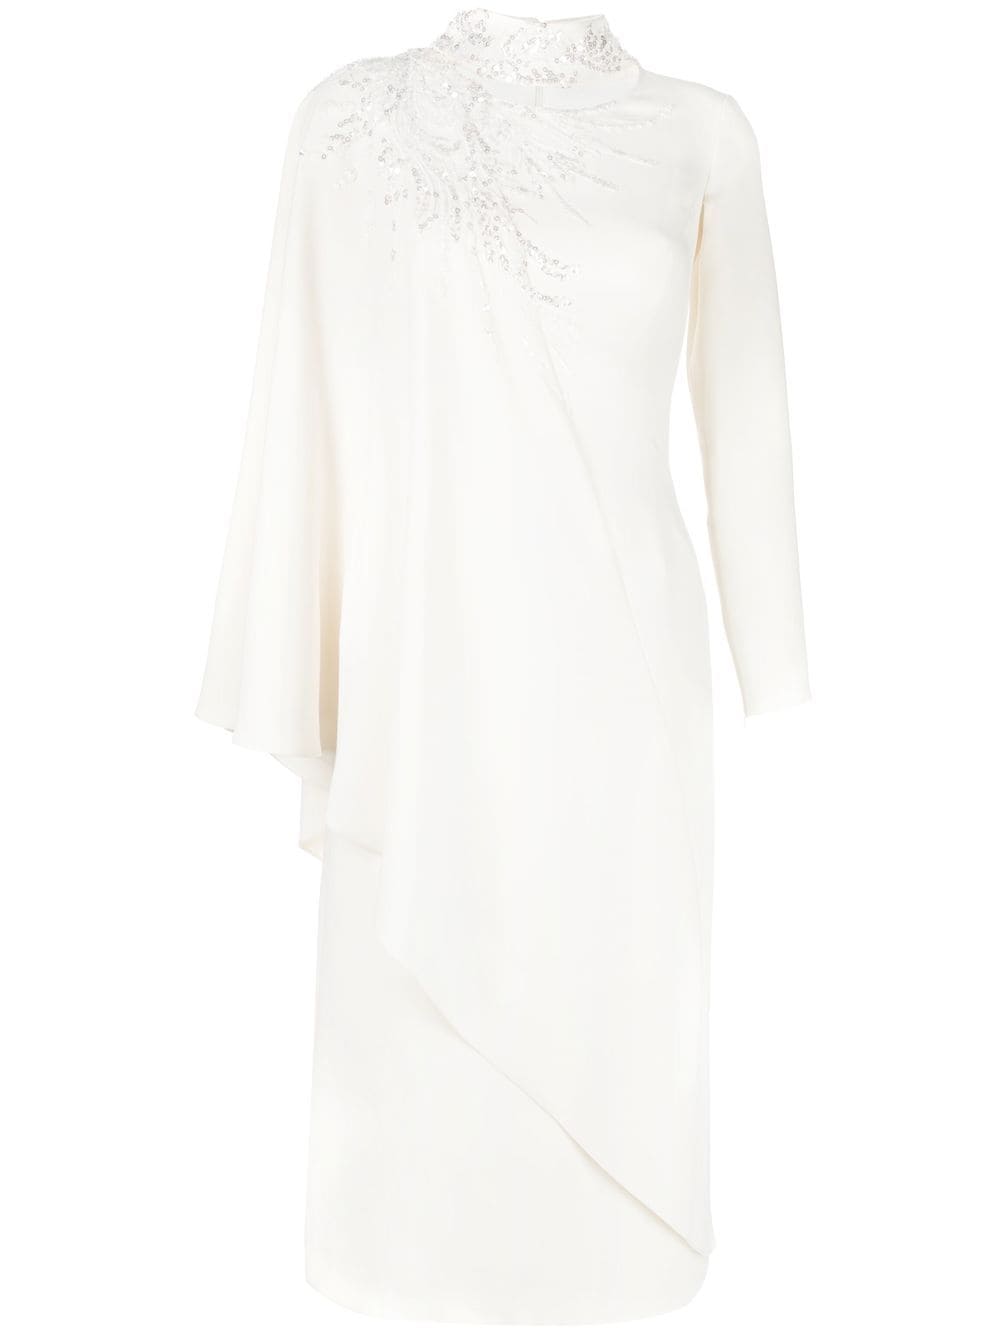 Saiid Kobeisy Kleid mit Pailletten - Weiß von Saiid Kobeisy